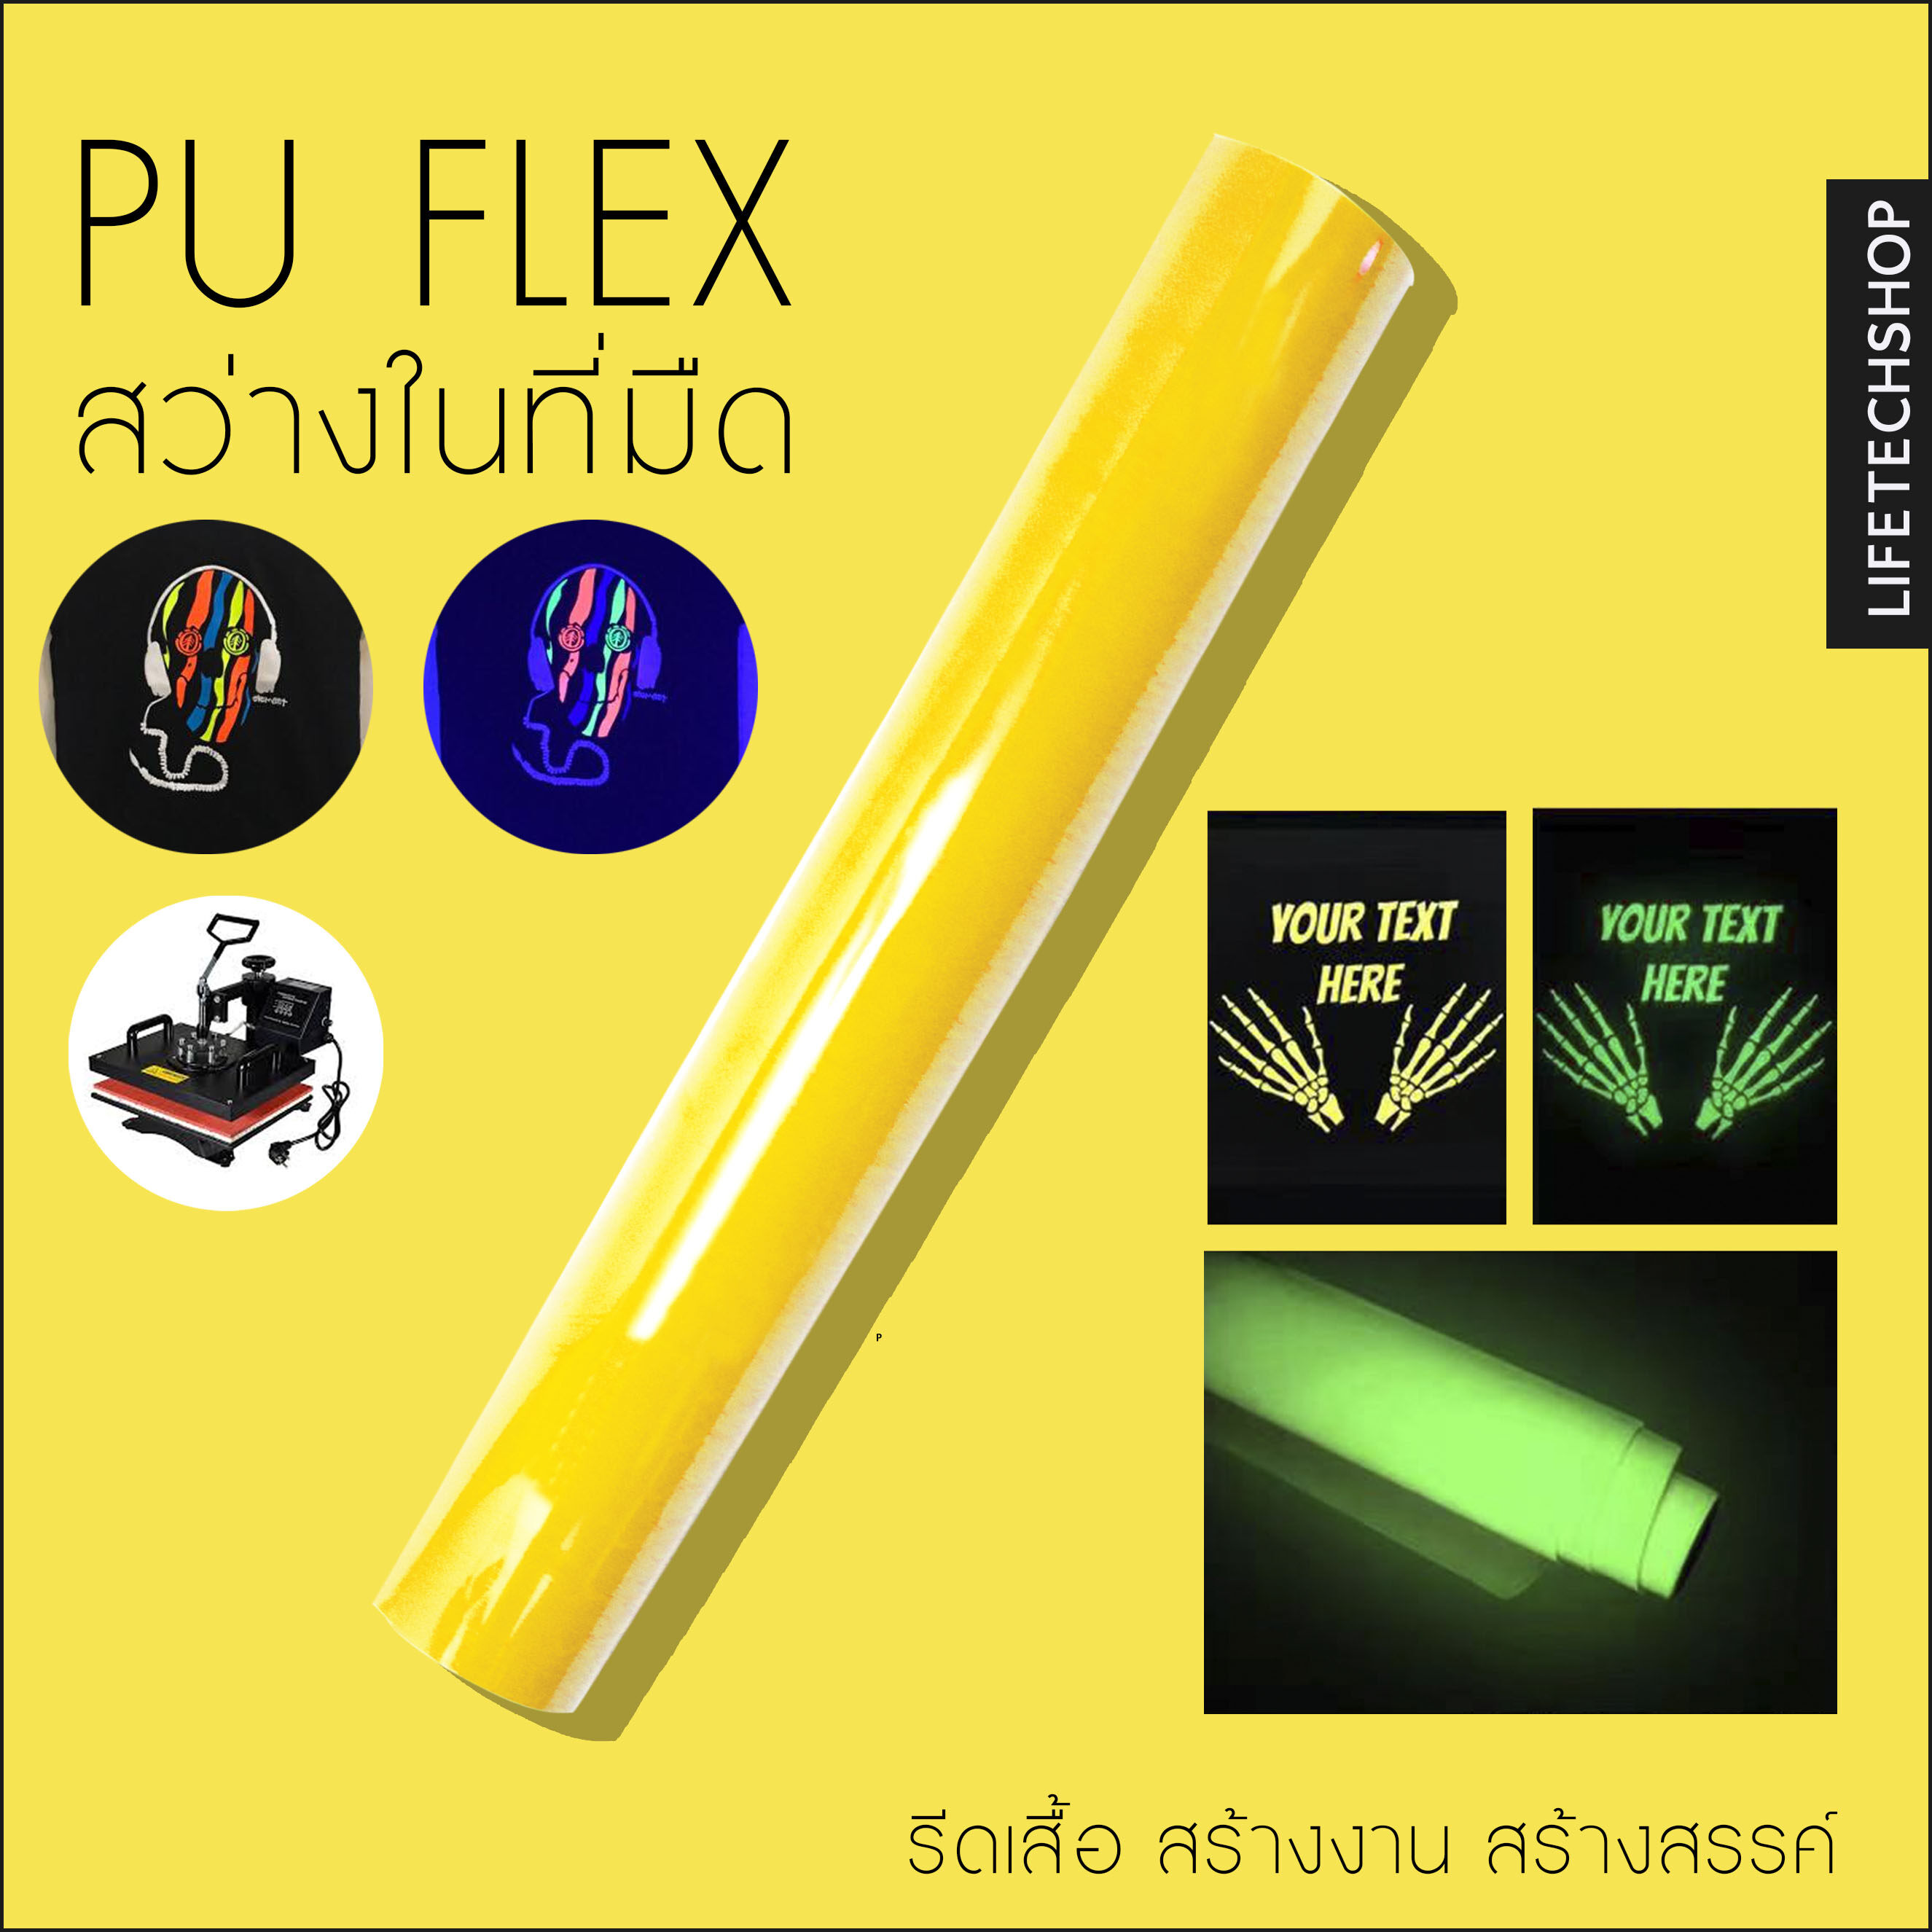 เฟล็ก เรืองแสง ติดเสื้อ FLEX Pu เฟล็กเรืองแสงรีดติดเสื้อทุกชนิด ขนาด 50x100CM.